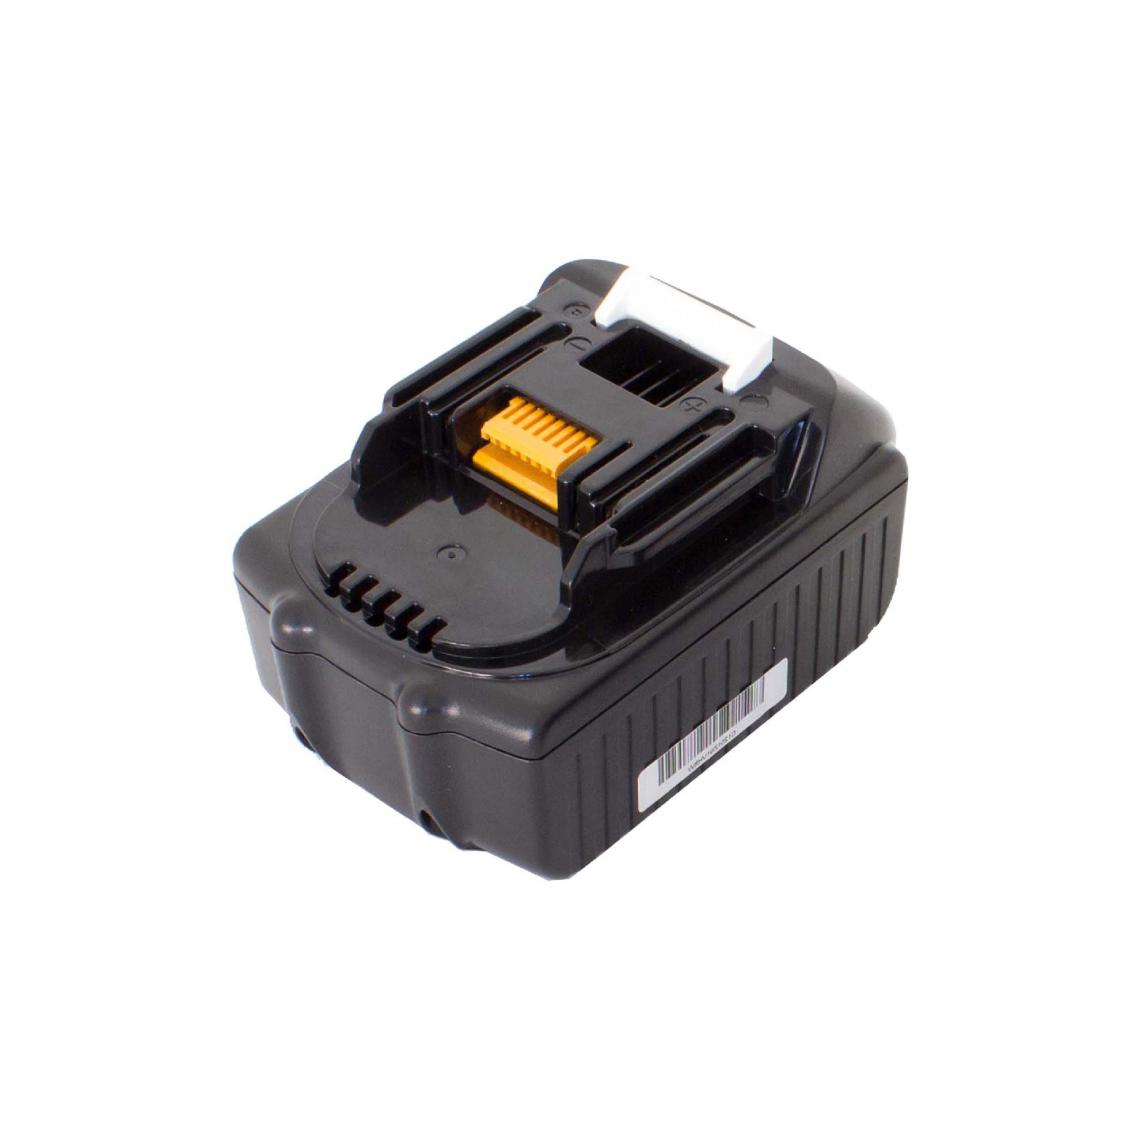 Vhbw - vhbw Batterie compatible avec Makita MUS104DSH, MUS104DZ, MUS154DSH, MUS154DZ, PB108D outil électrique (1500 mAh, Li-ion, 18 V) - Accessoires vissage, perçage